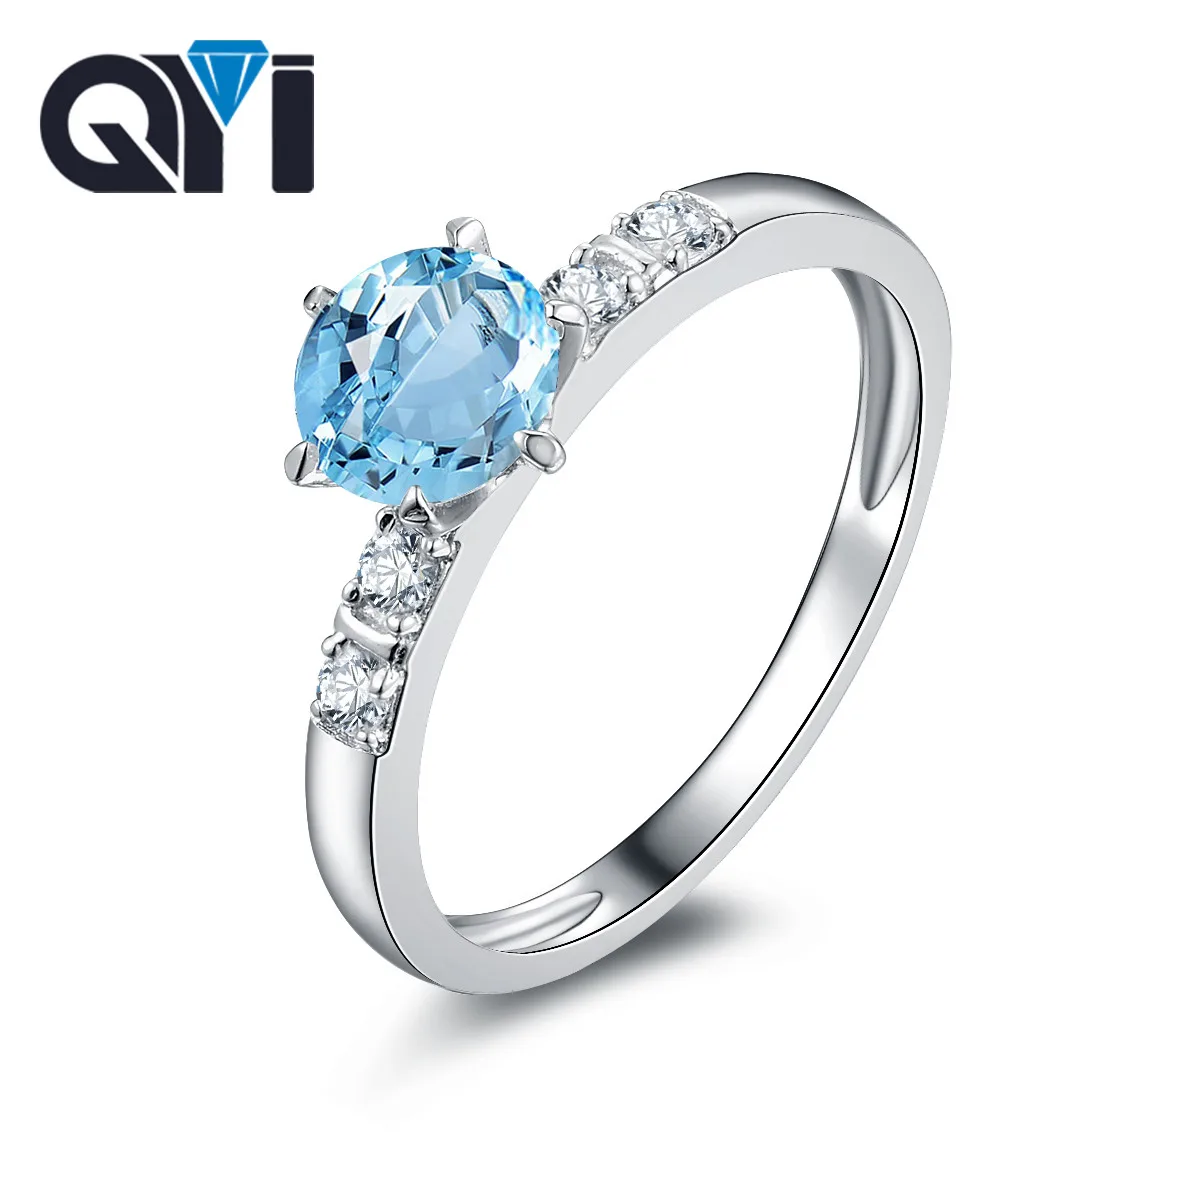 QYI природных Голубой топаз кольцо 925 пробы серебро Gemstone Fine Jewelry Solitaire Обручение кольца для Для женщин Бесплатная доставка